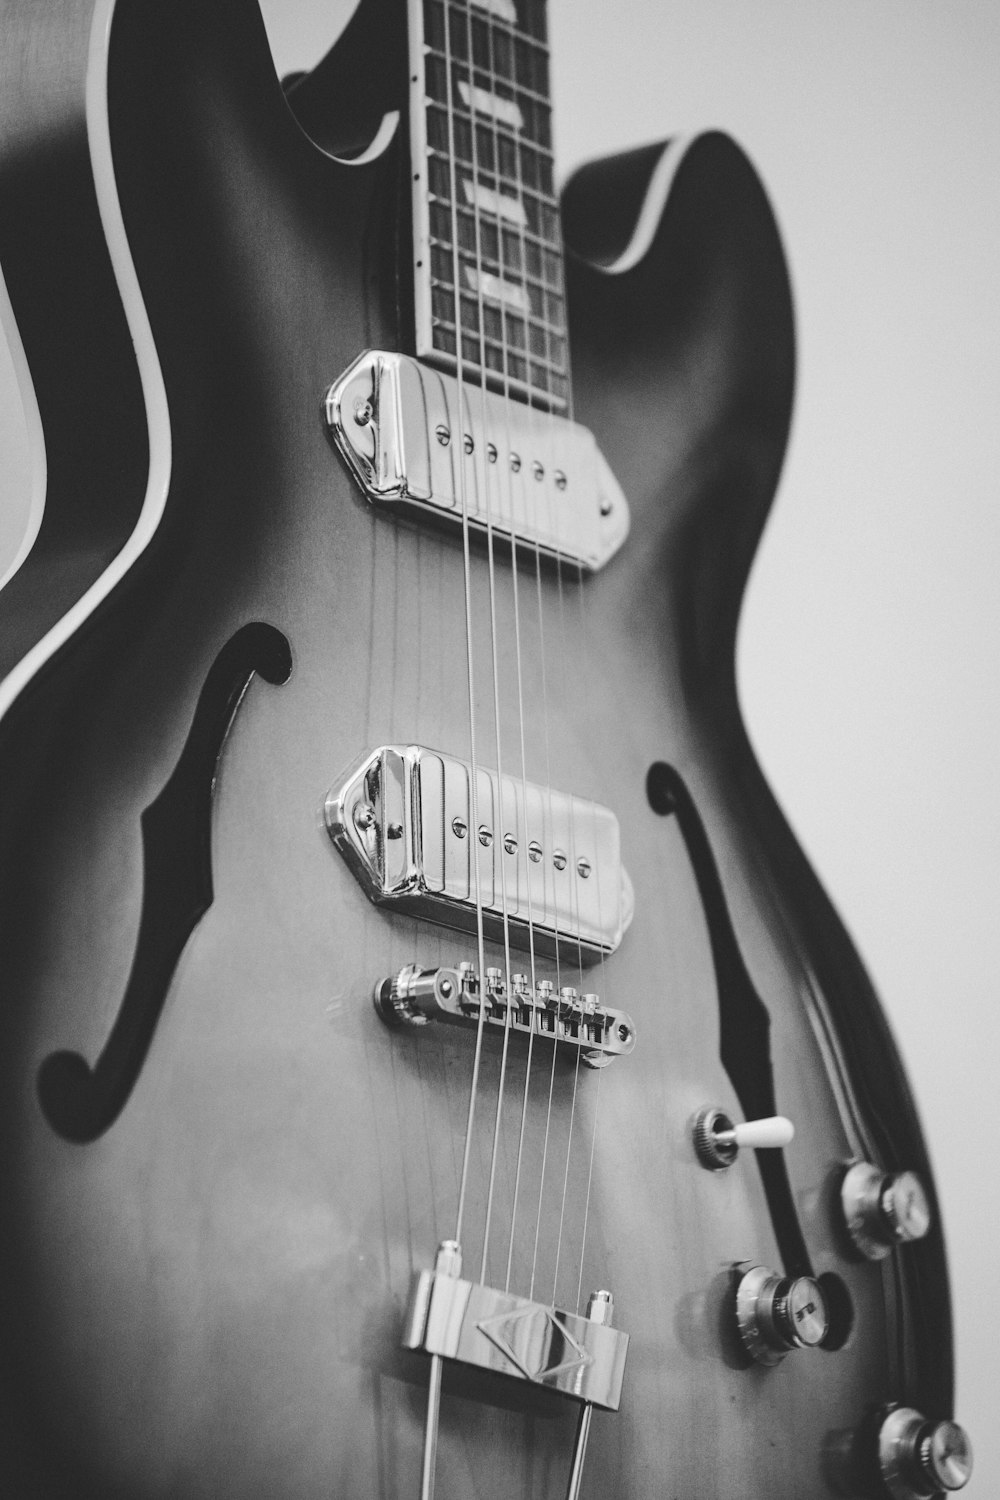 재즈 기타의 그레이스케일 사진